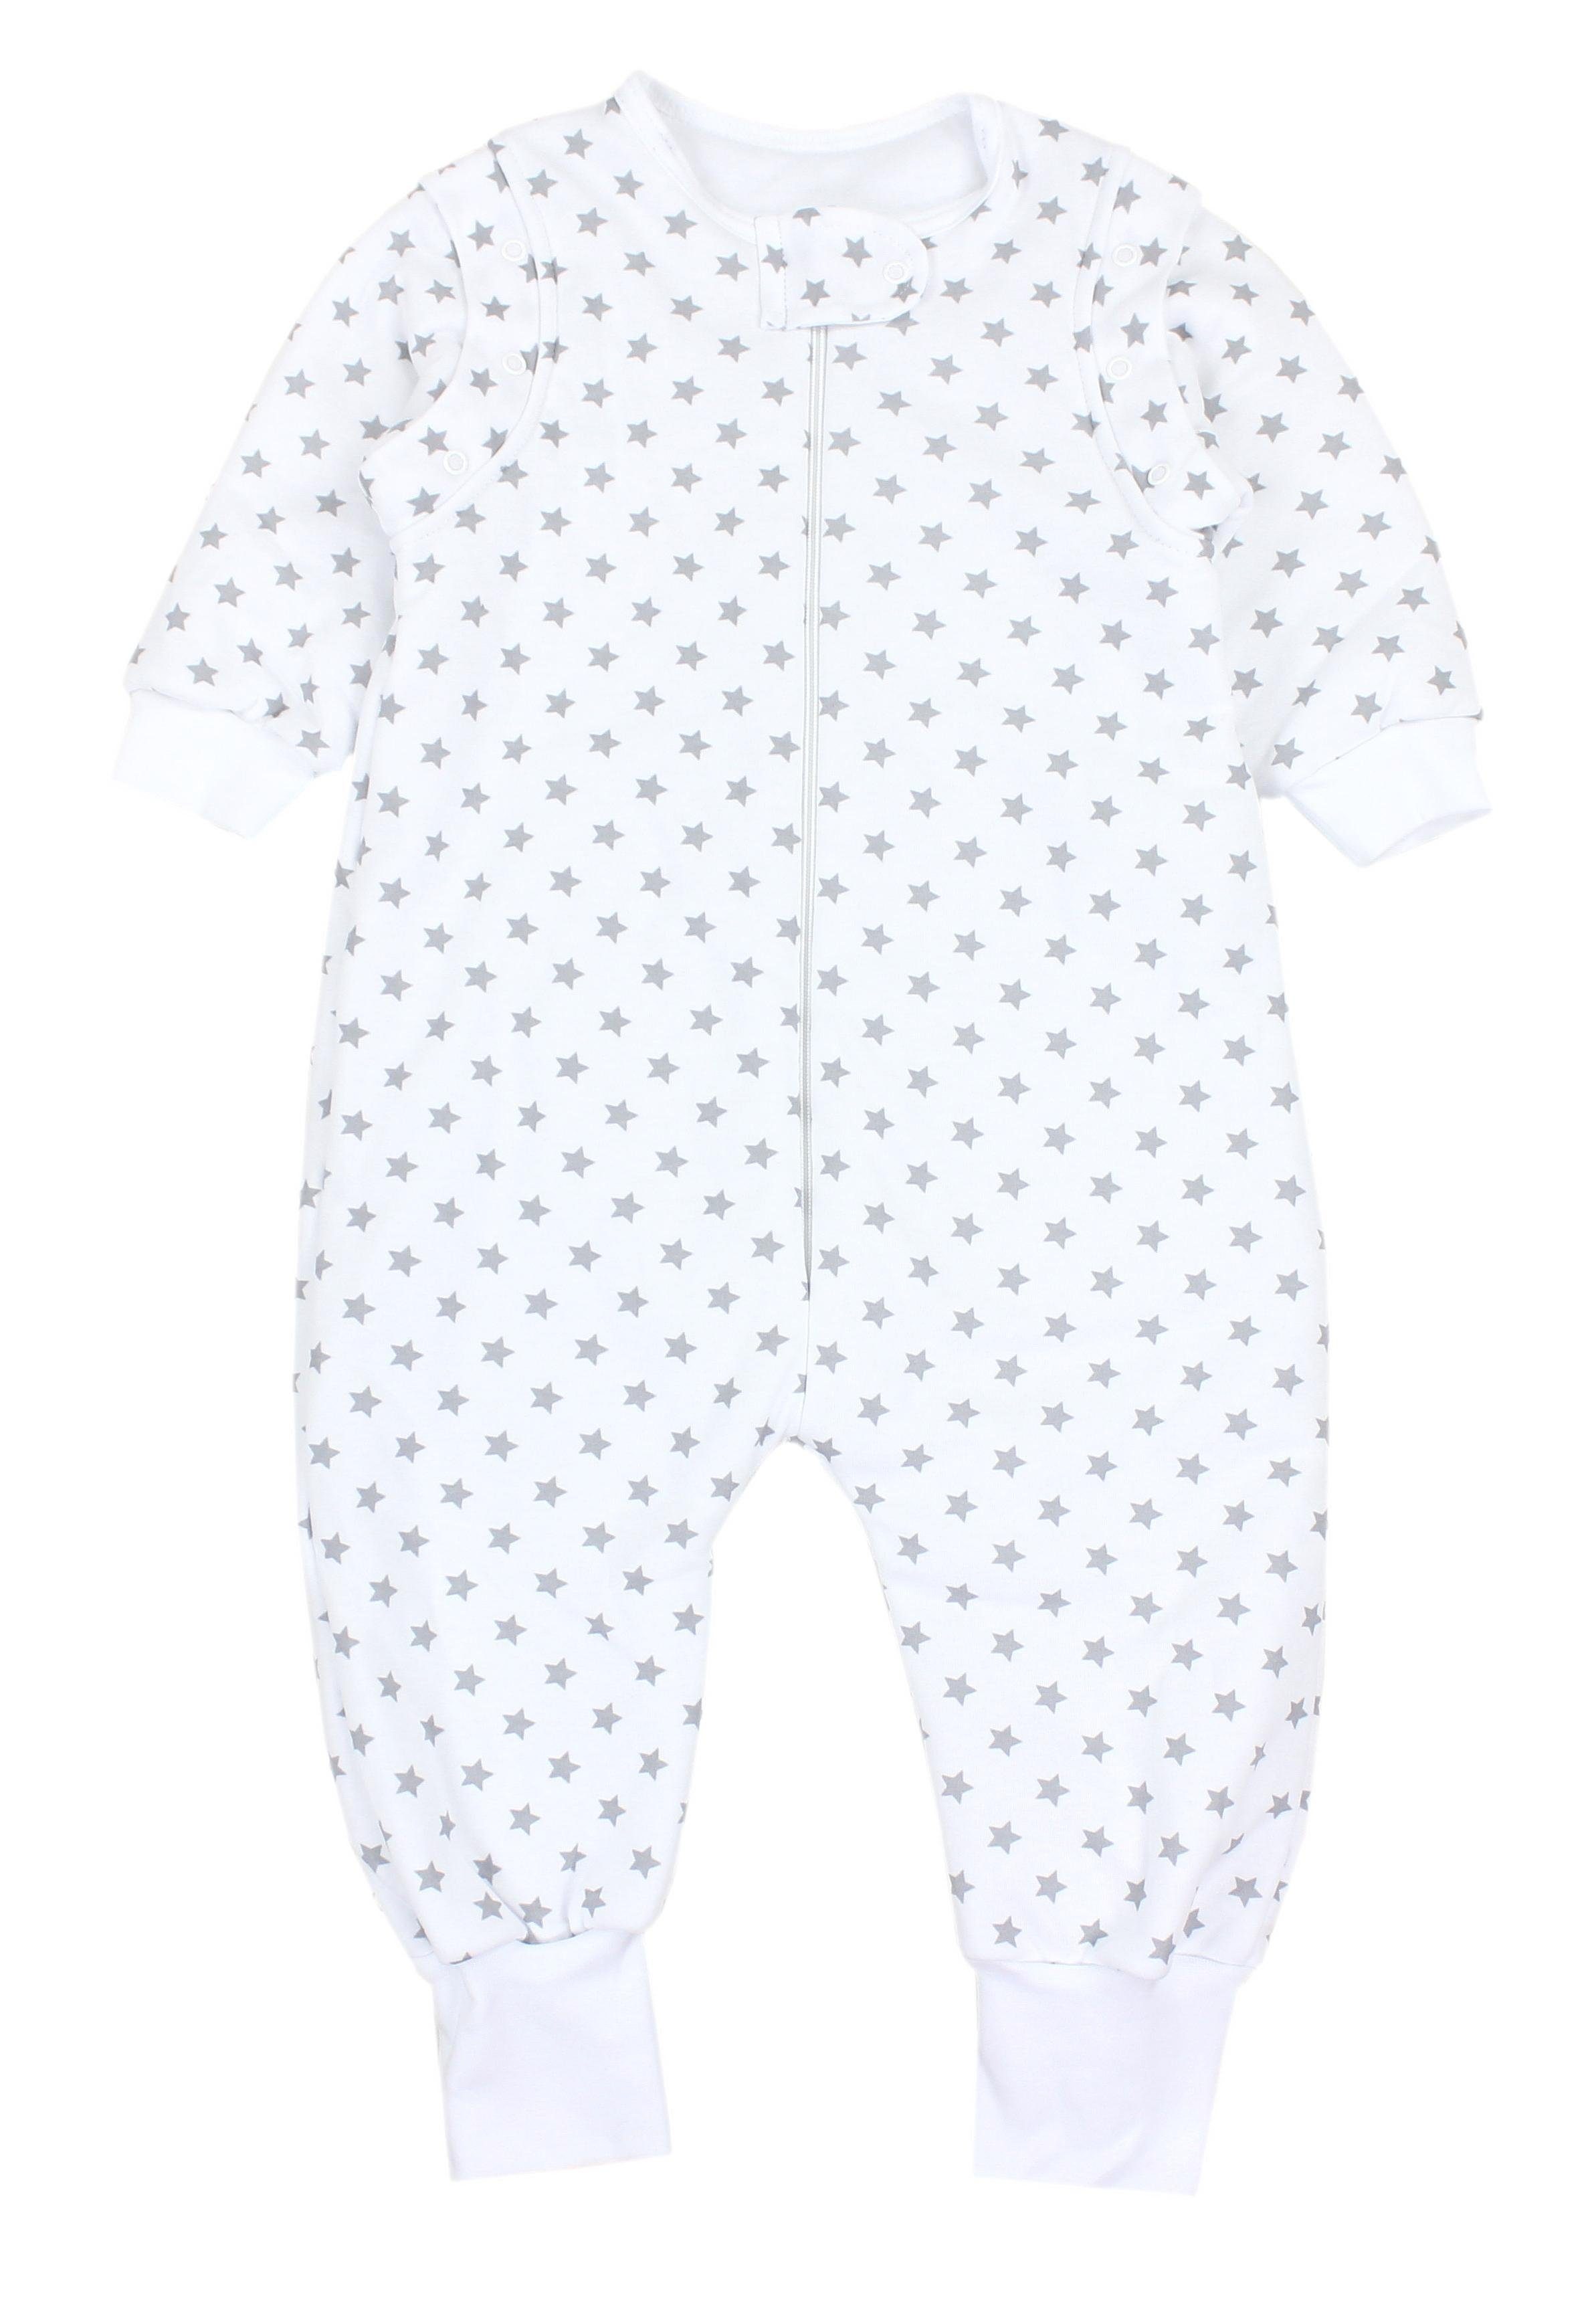 TupTam Babyschlafsack mit Beinen und Ärmel Winter OEKO-TEX zertifiziert Unisex Sternchen Weiß/Grau